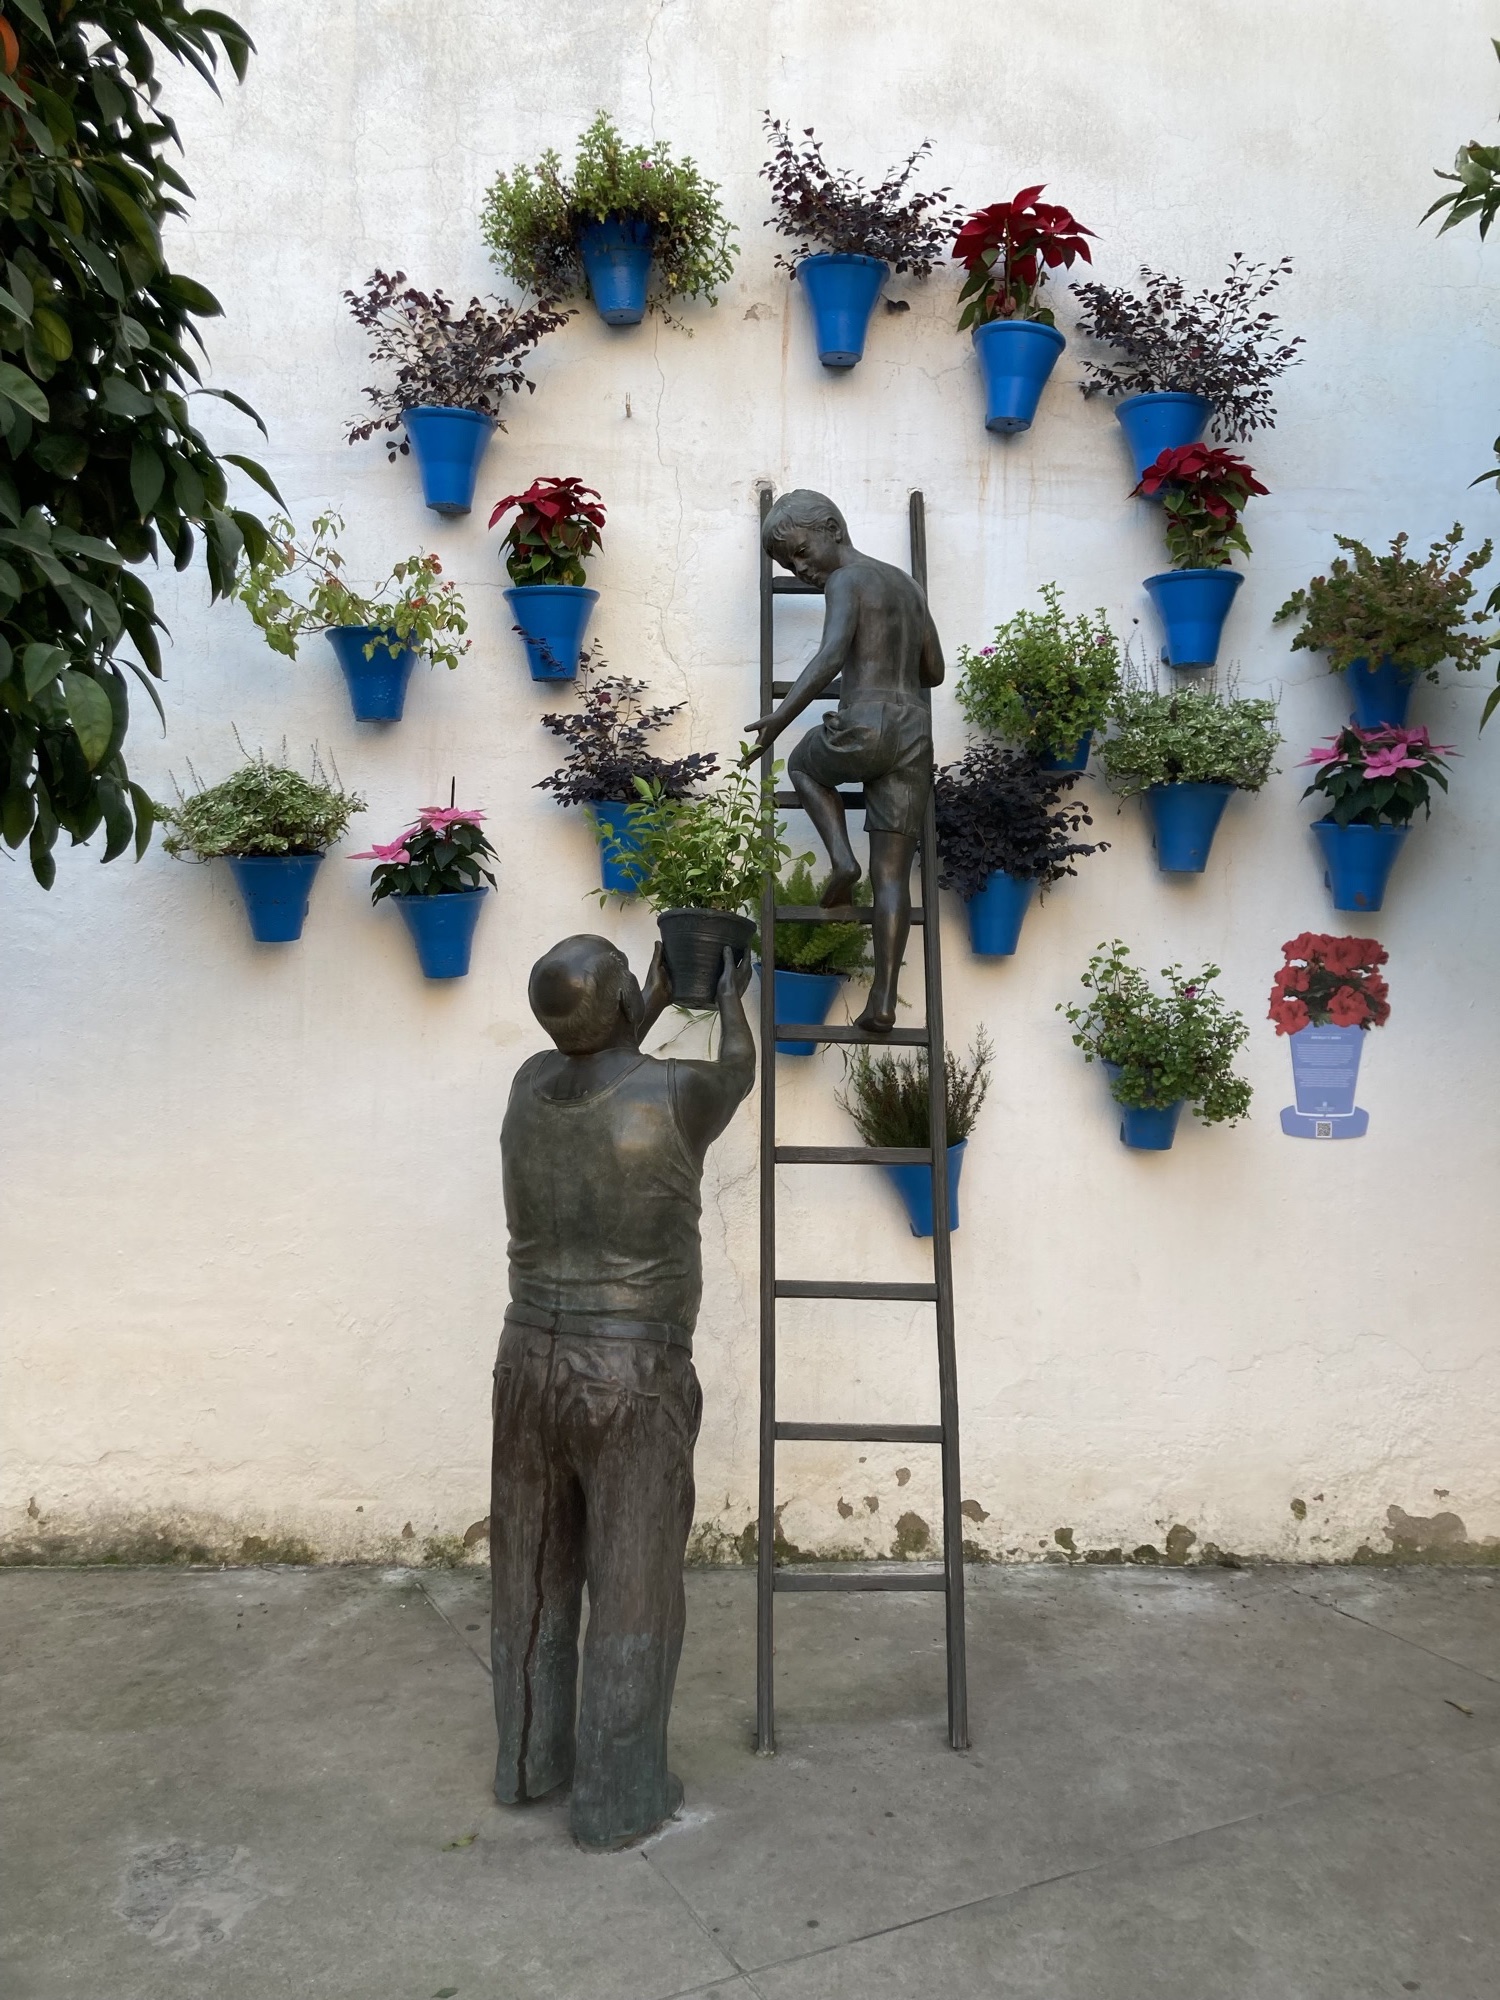 Installation: an der Wand hängen blaue Blumentöpfe mit verschieden Pflanzen, davor eine Metallskulptur, die einen Burschen auf einer Leiter darstellt, dem eine ältere Person einen weiteren Blumentopf hinstreckt